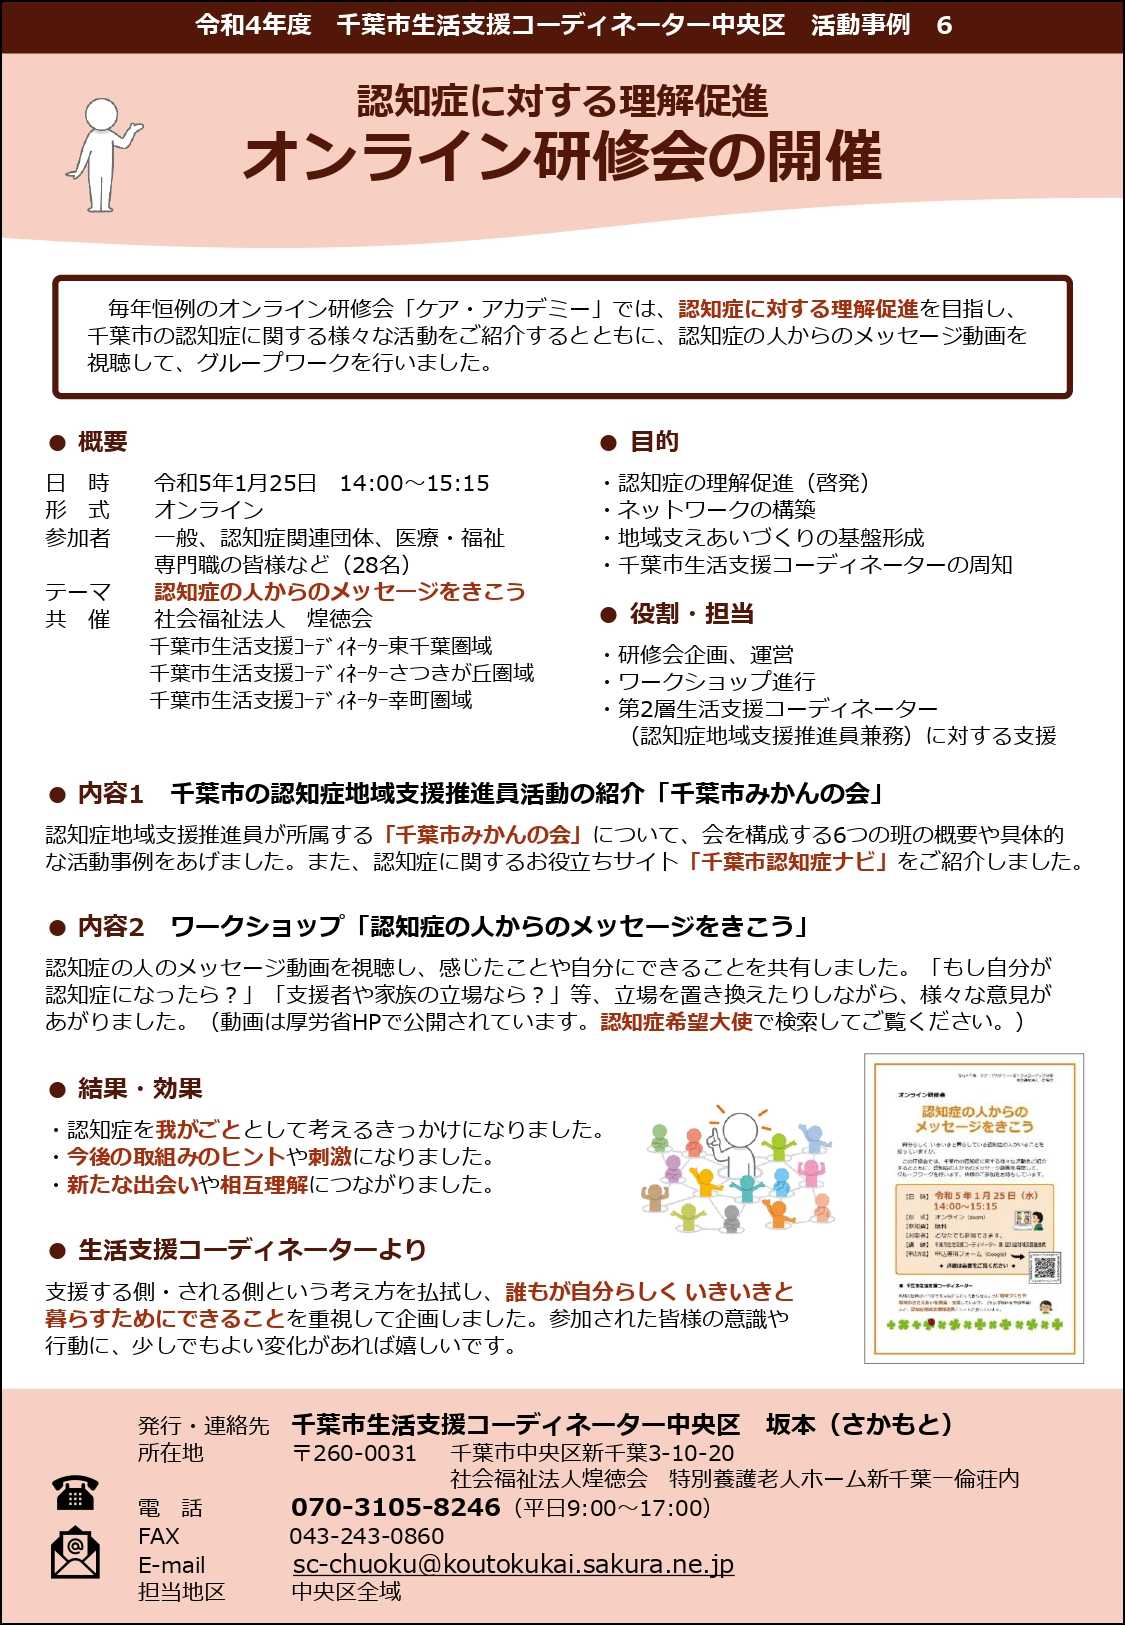 【活動事例】オンライン研修会の開催